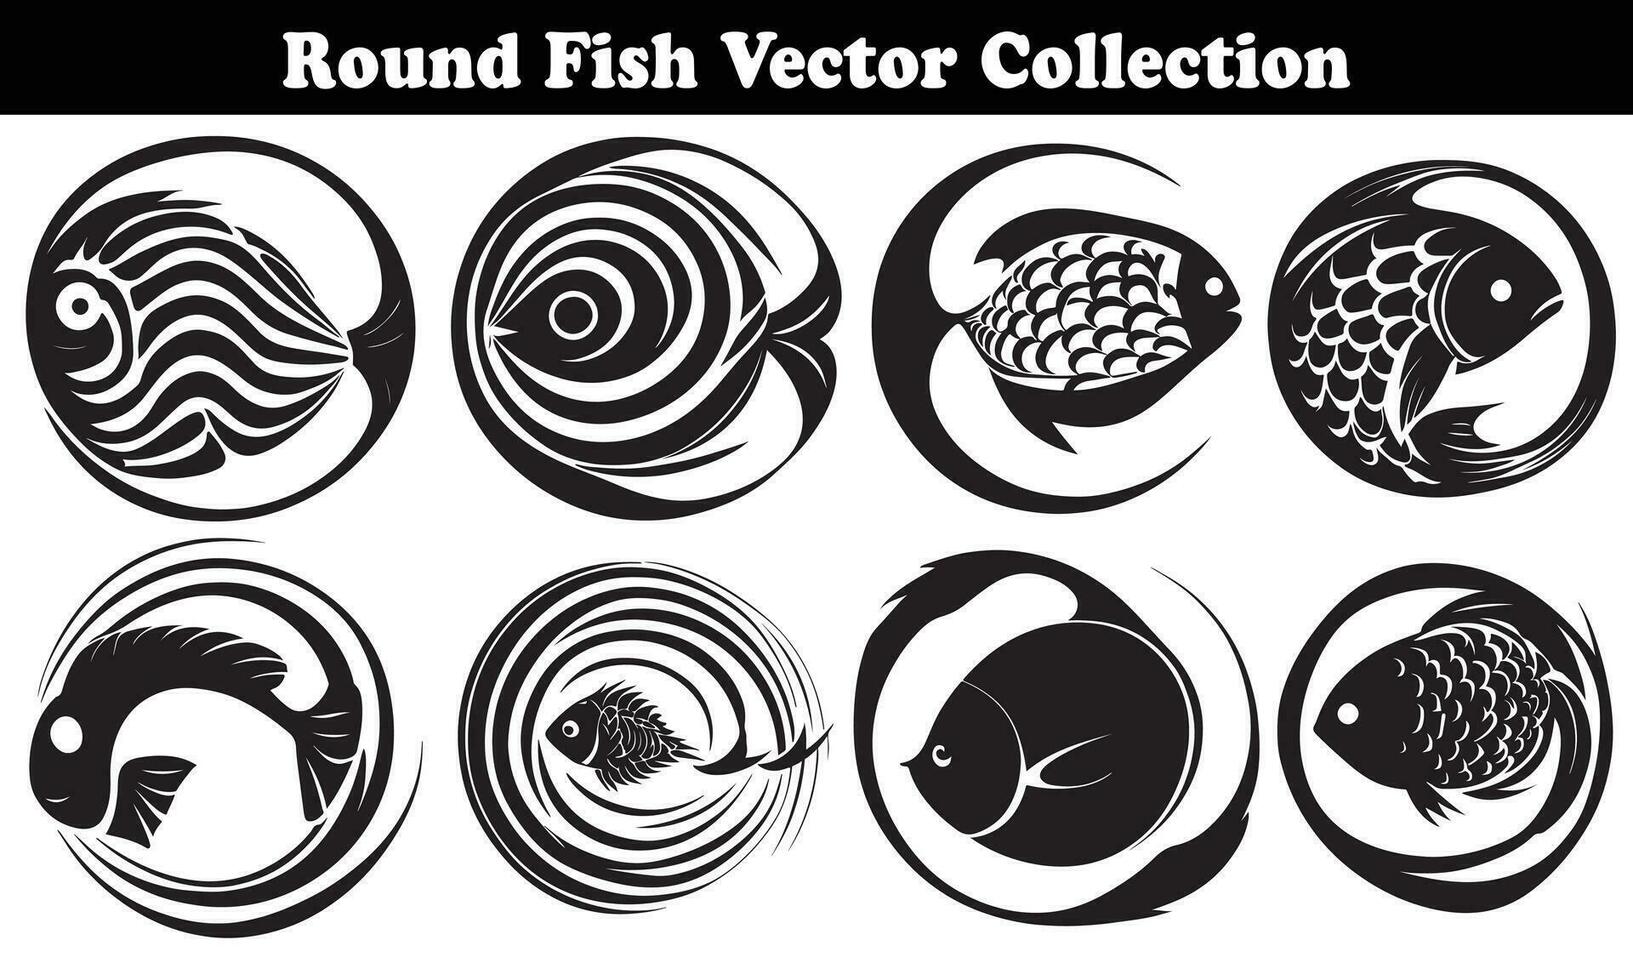 Round Fish Vector Design back on white background for designer